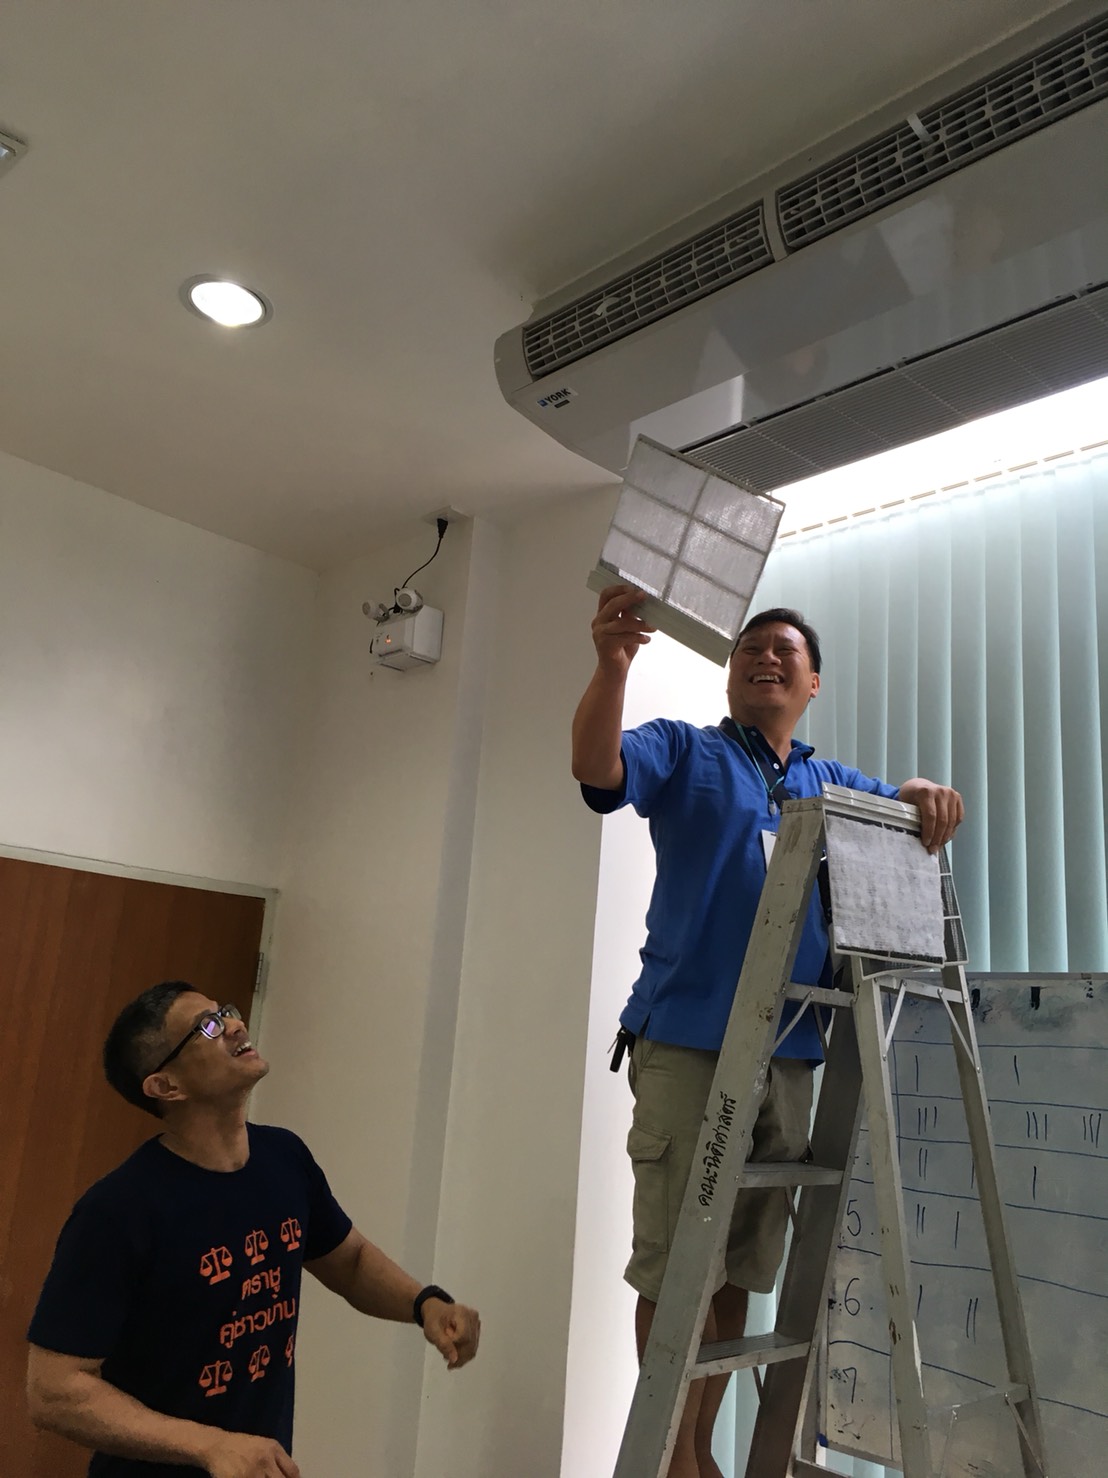 คณะนิติศาสตร์ มหาวิทยาลัยเชียงใหม่ ได้ติดตั้งเครื่องฟอกอากาศ ติดฟิลเตอร์แอร์ทุกตัว ในห้องเรียน ห้องทำงาน ห้องประชุม